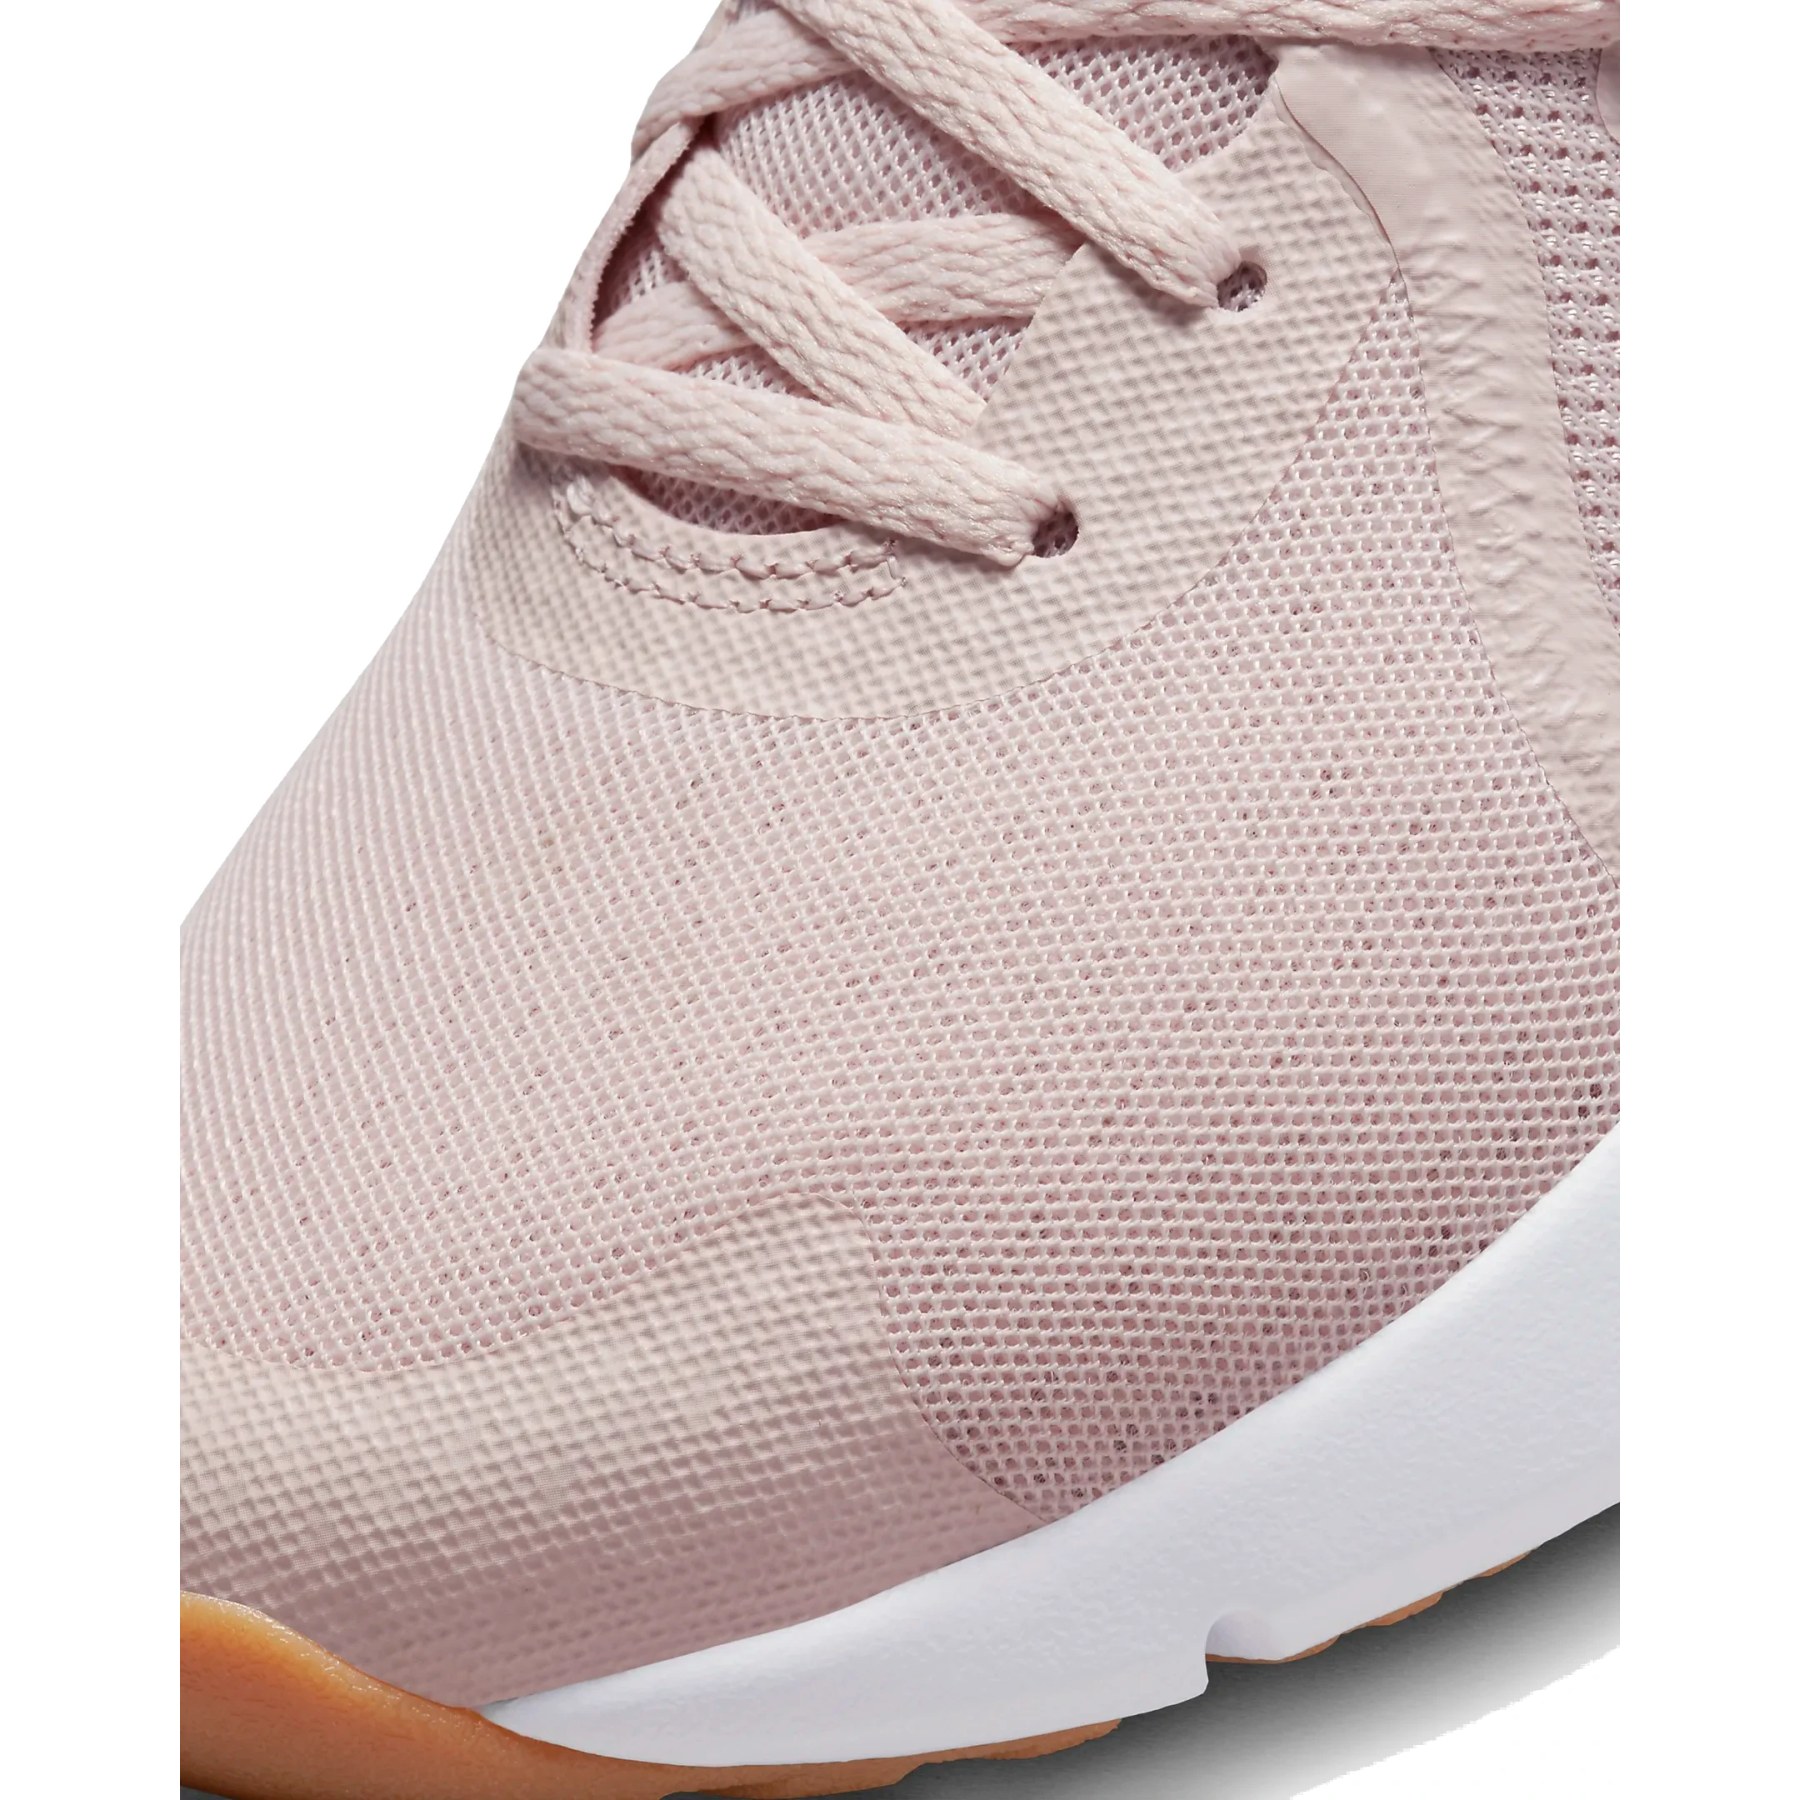 Nike In-Season TR 13 Trainingsschuhe Damen - barely rose/white-pink oxford  DV3975-600